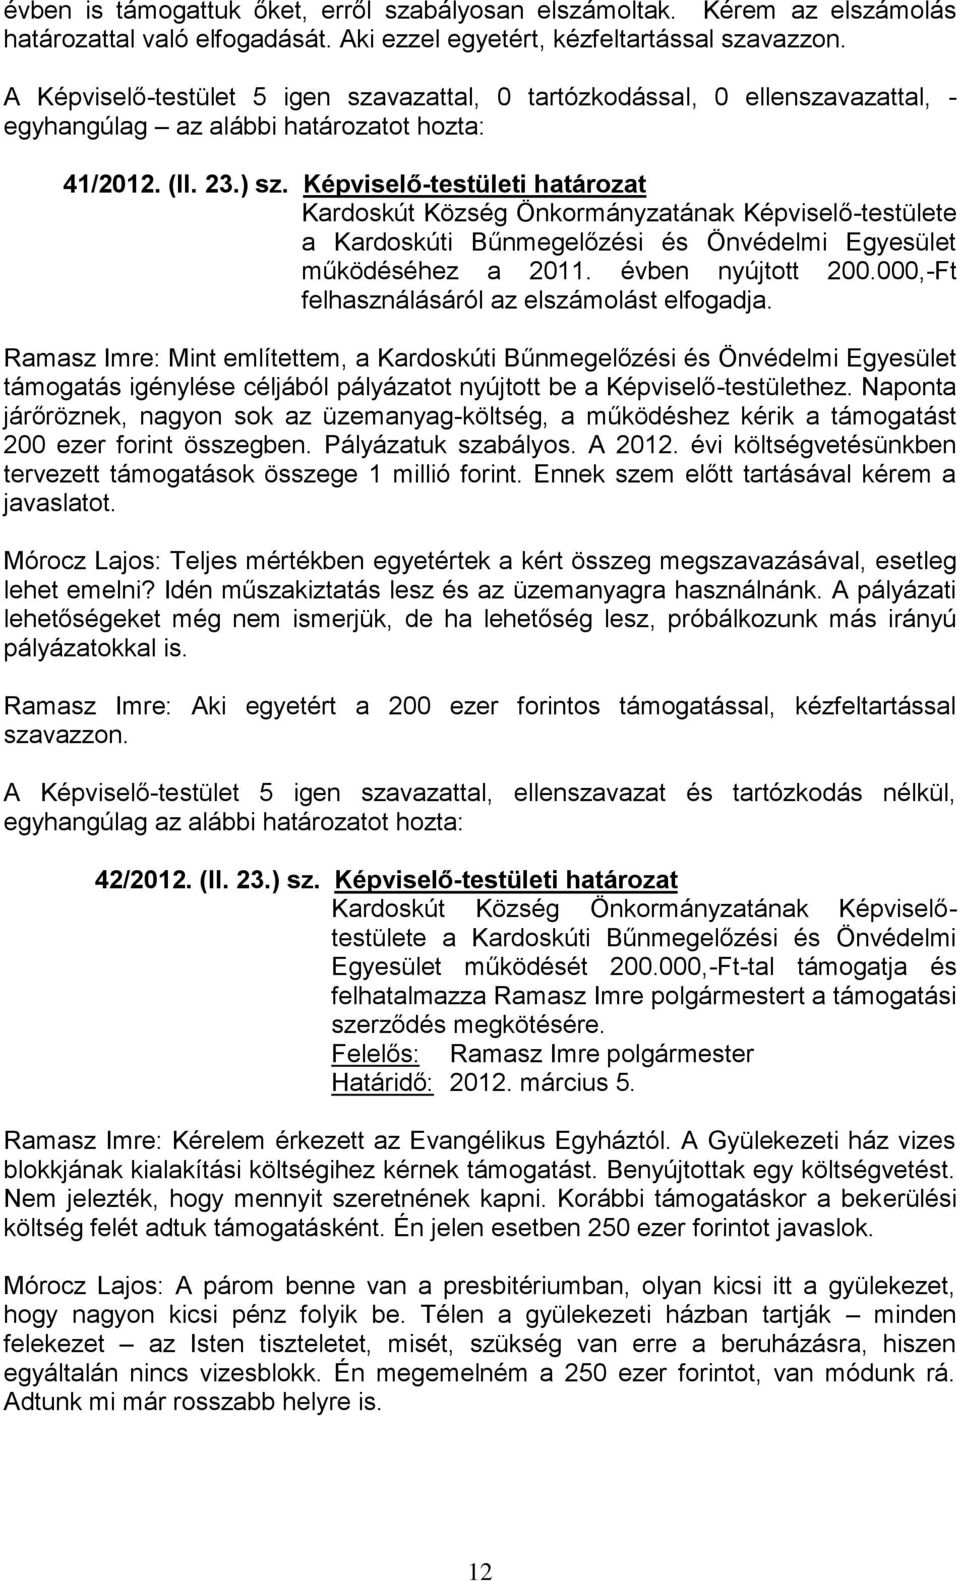 Képviselő-testületi határozat Kardoskút Község Önkormányzatának Képviselő-testülete a Kardoskúti Bűnmegelőzési és Önvédelmi Egyesület működéséhez a 2011. évben nyújtott 200.